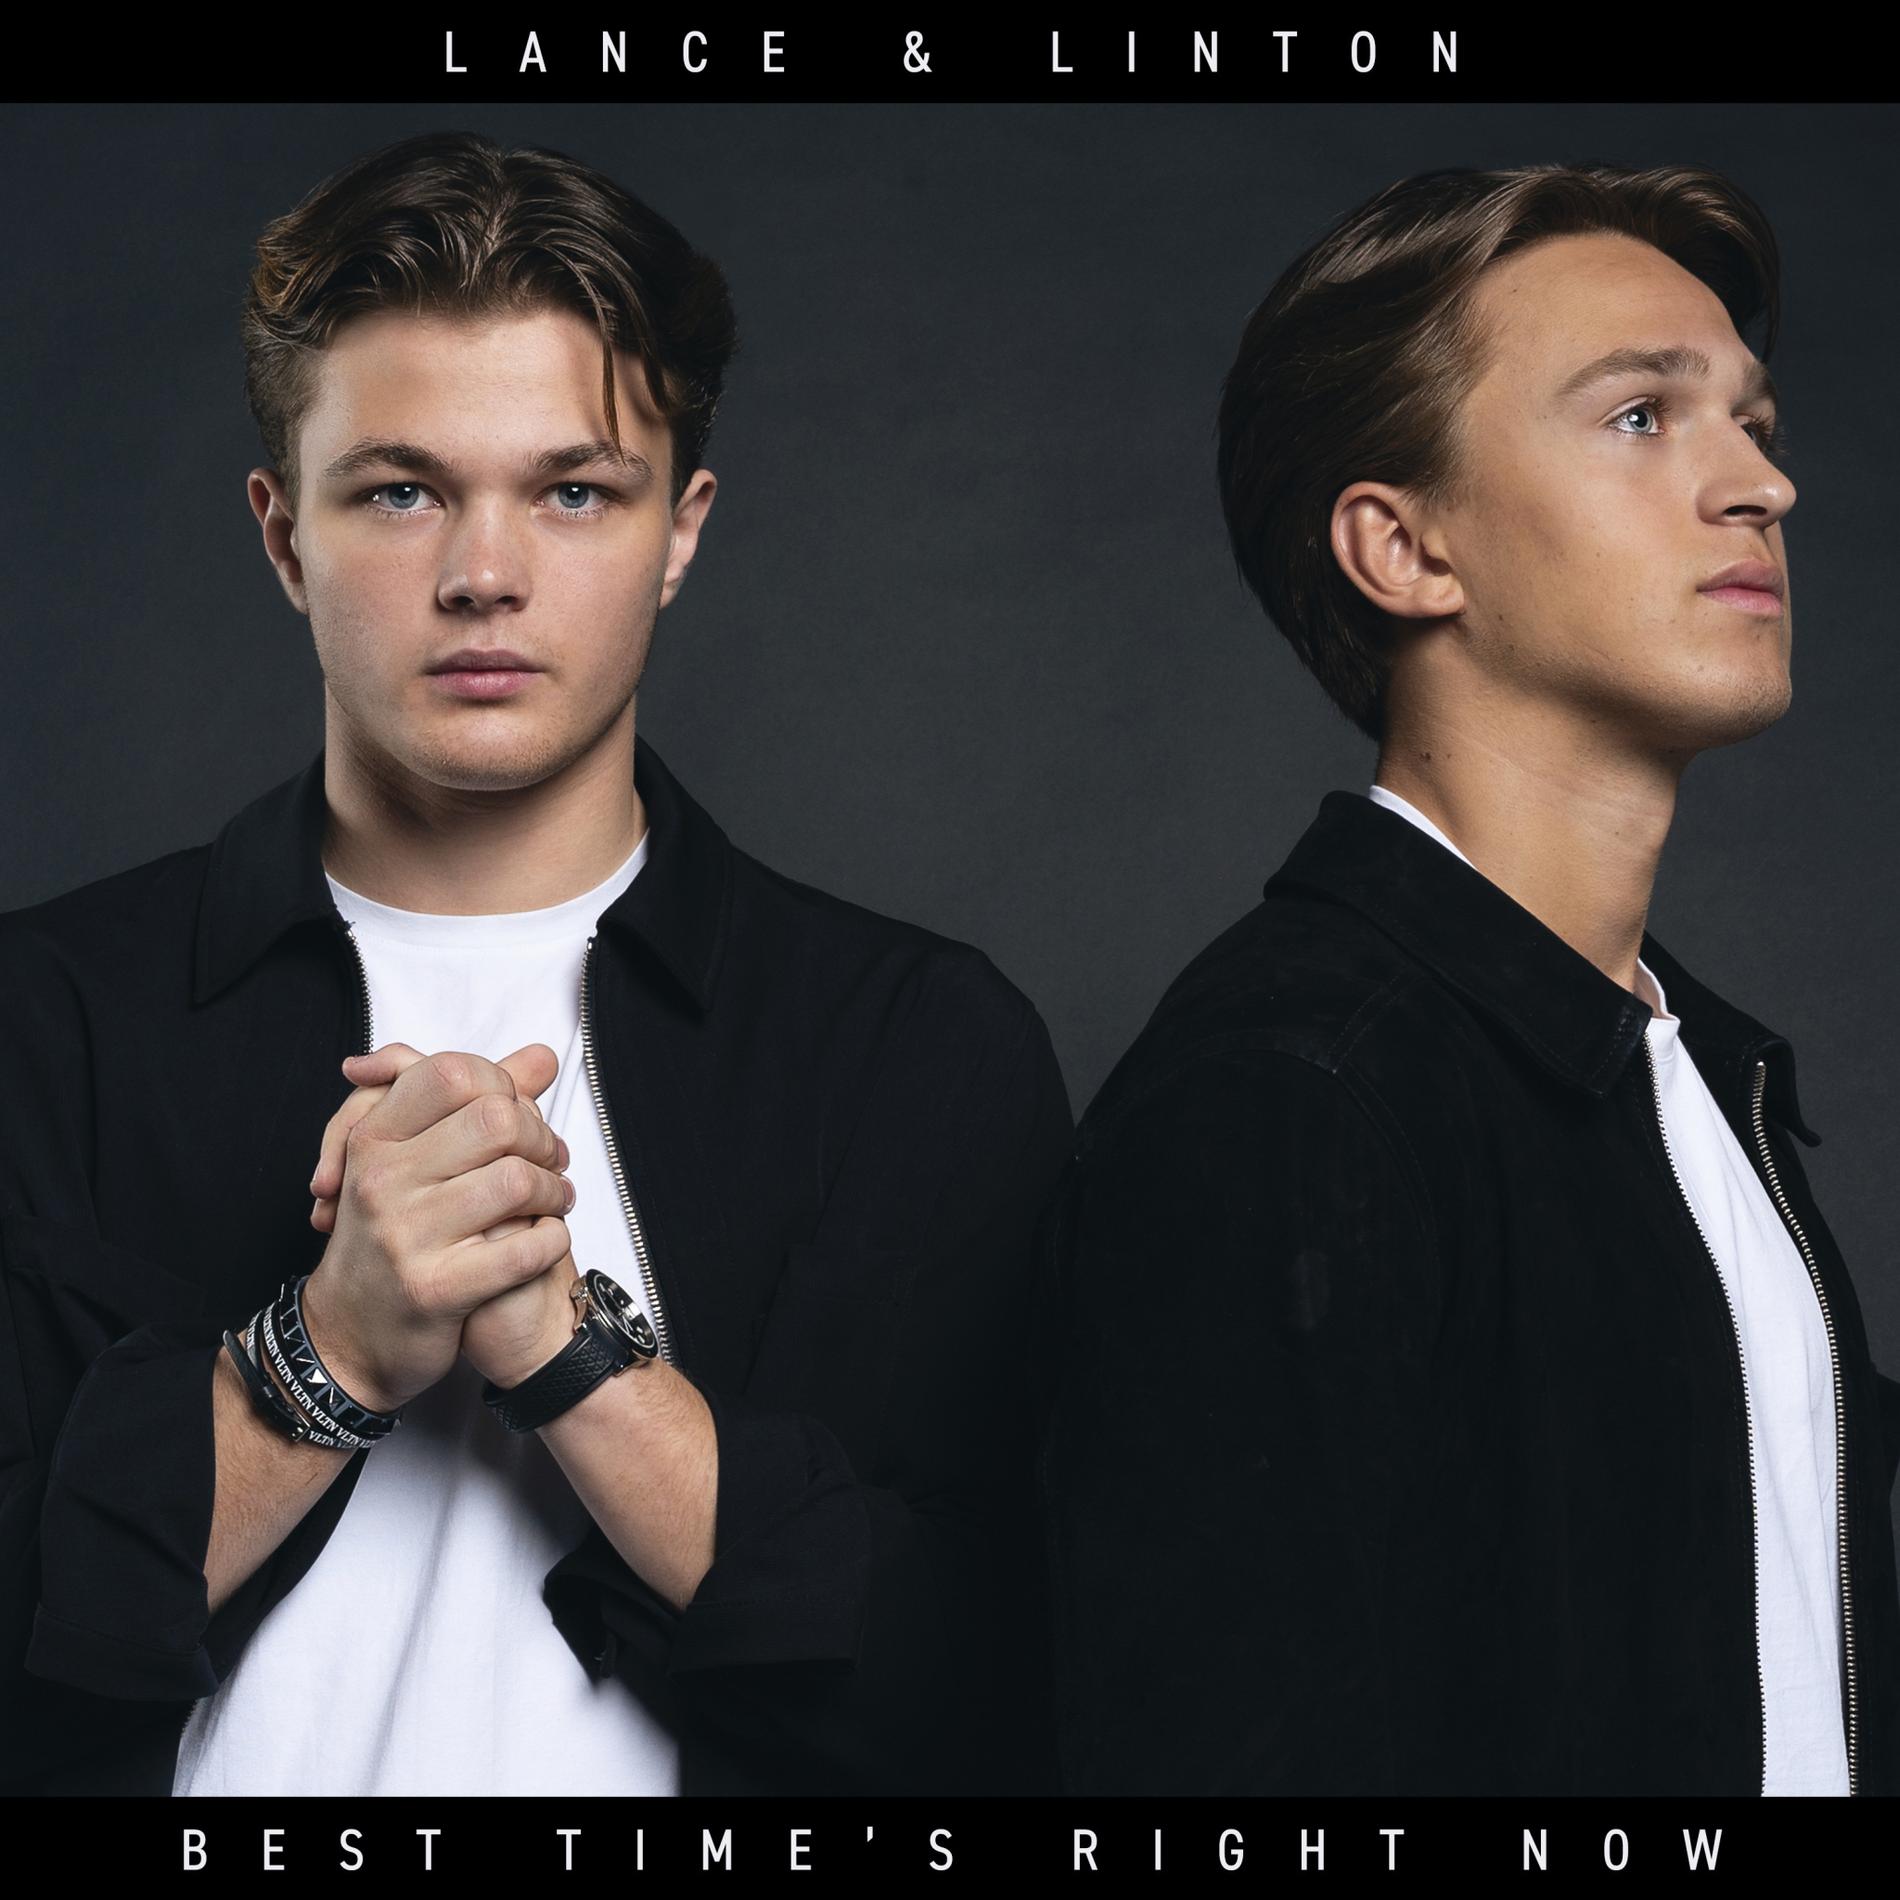 Lance & Lintons debutsingel ”Best time’s right now” släpps 21 juni.